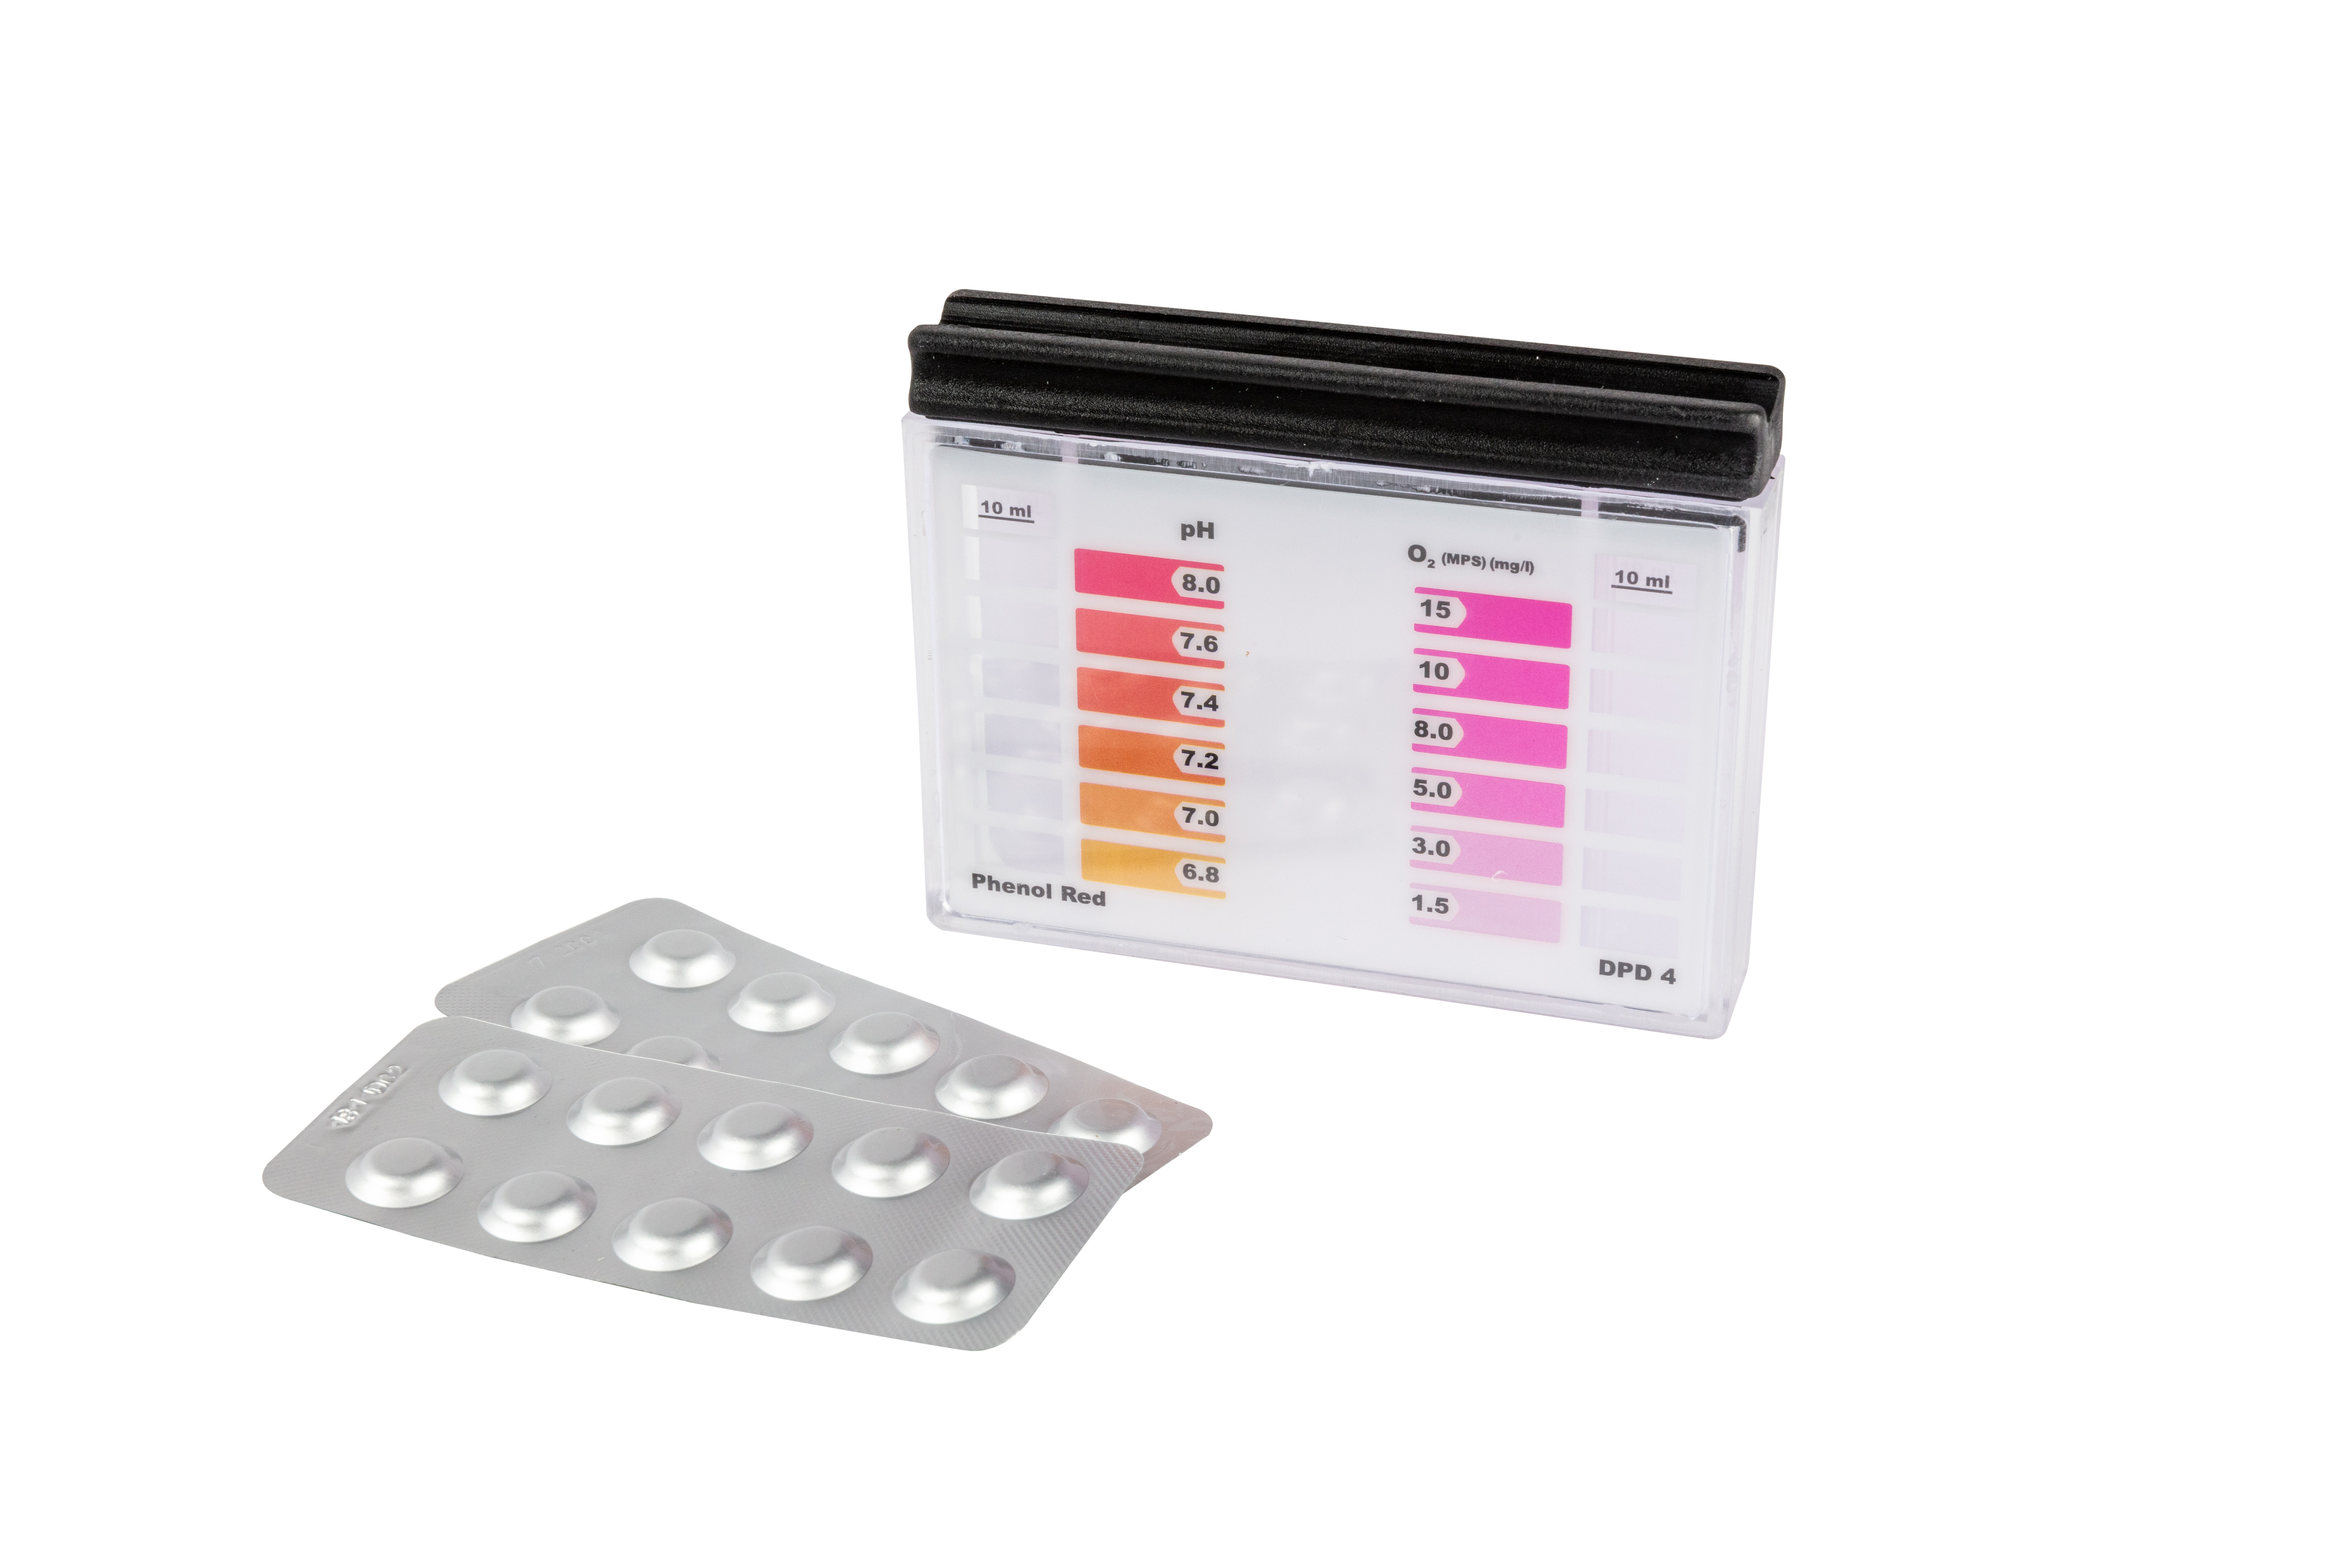 STEINBACH VERTRIEBS GMBH Testkit für pH/O² 10 Tabletten Je 10 Stk. Tabletten DPD4 + Phenol-Red